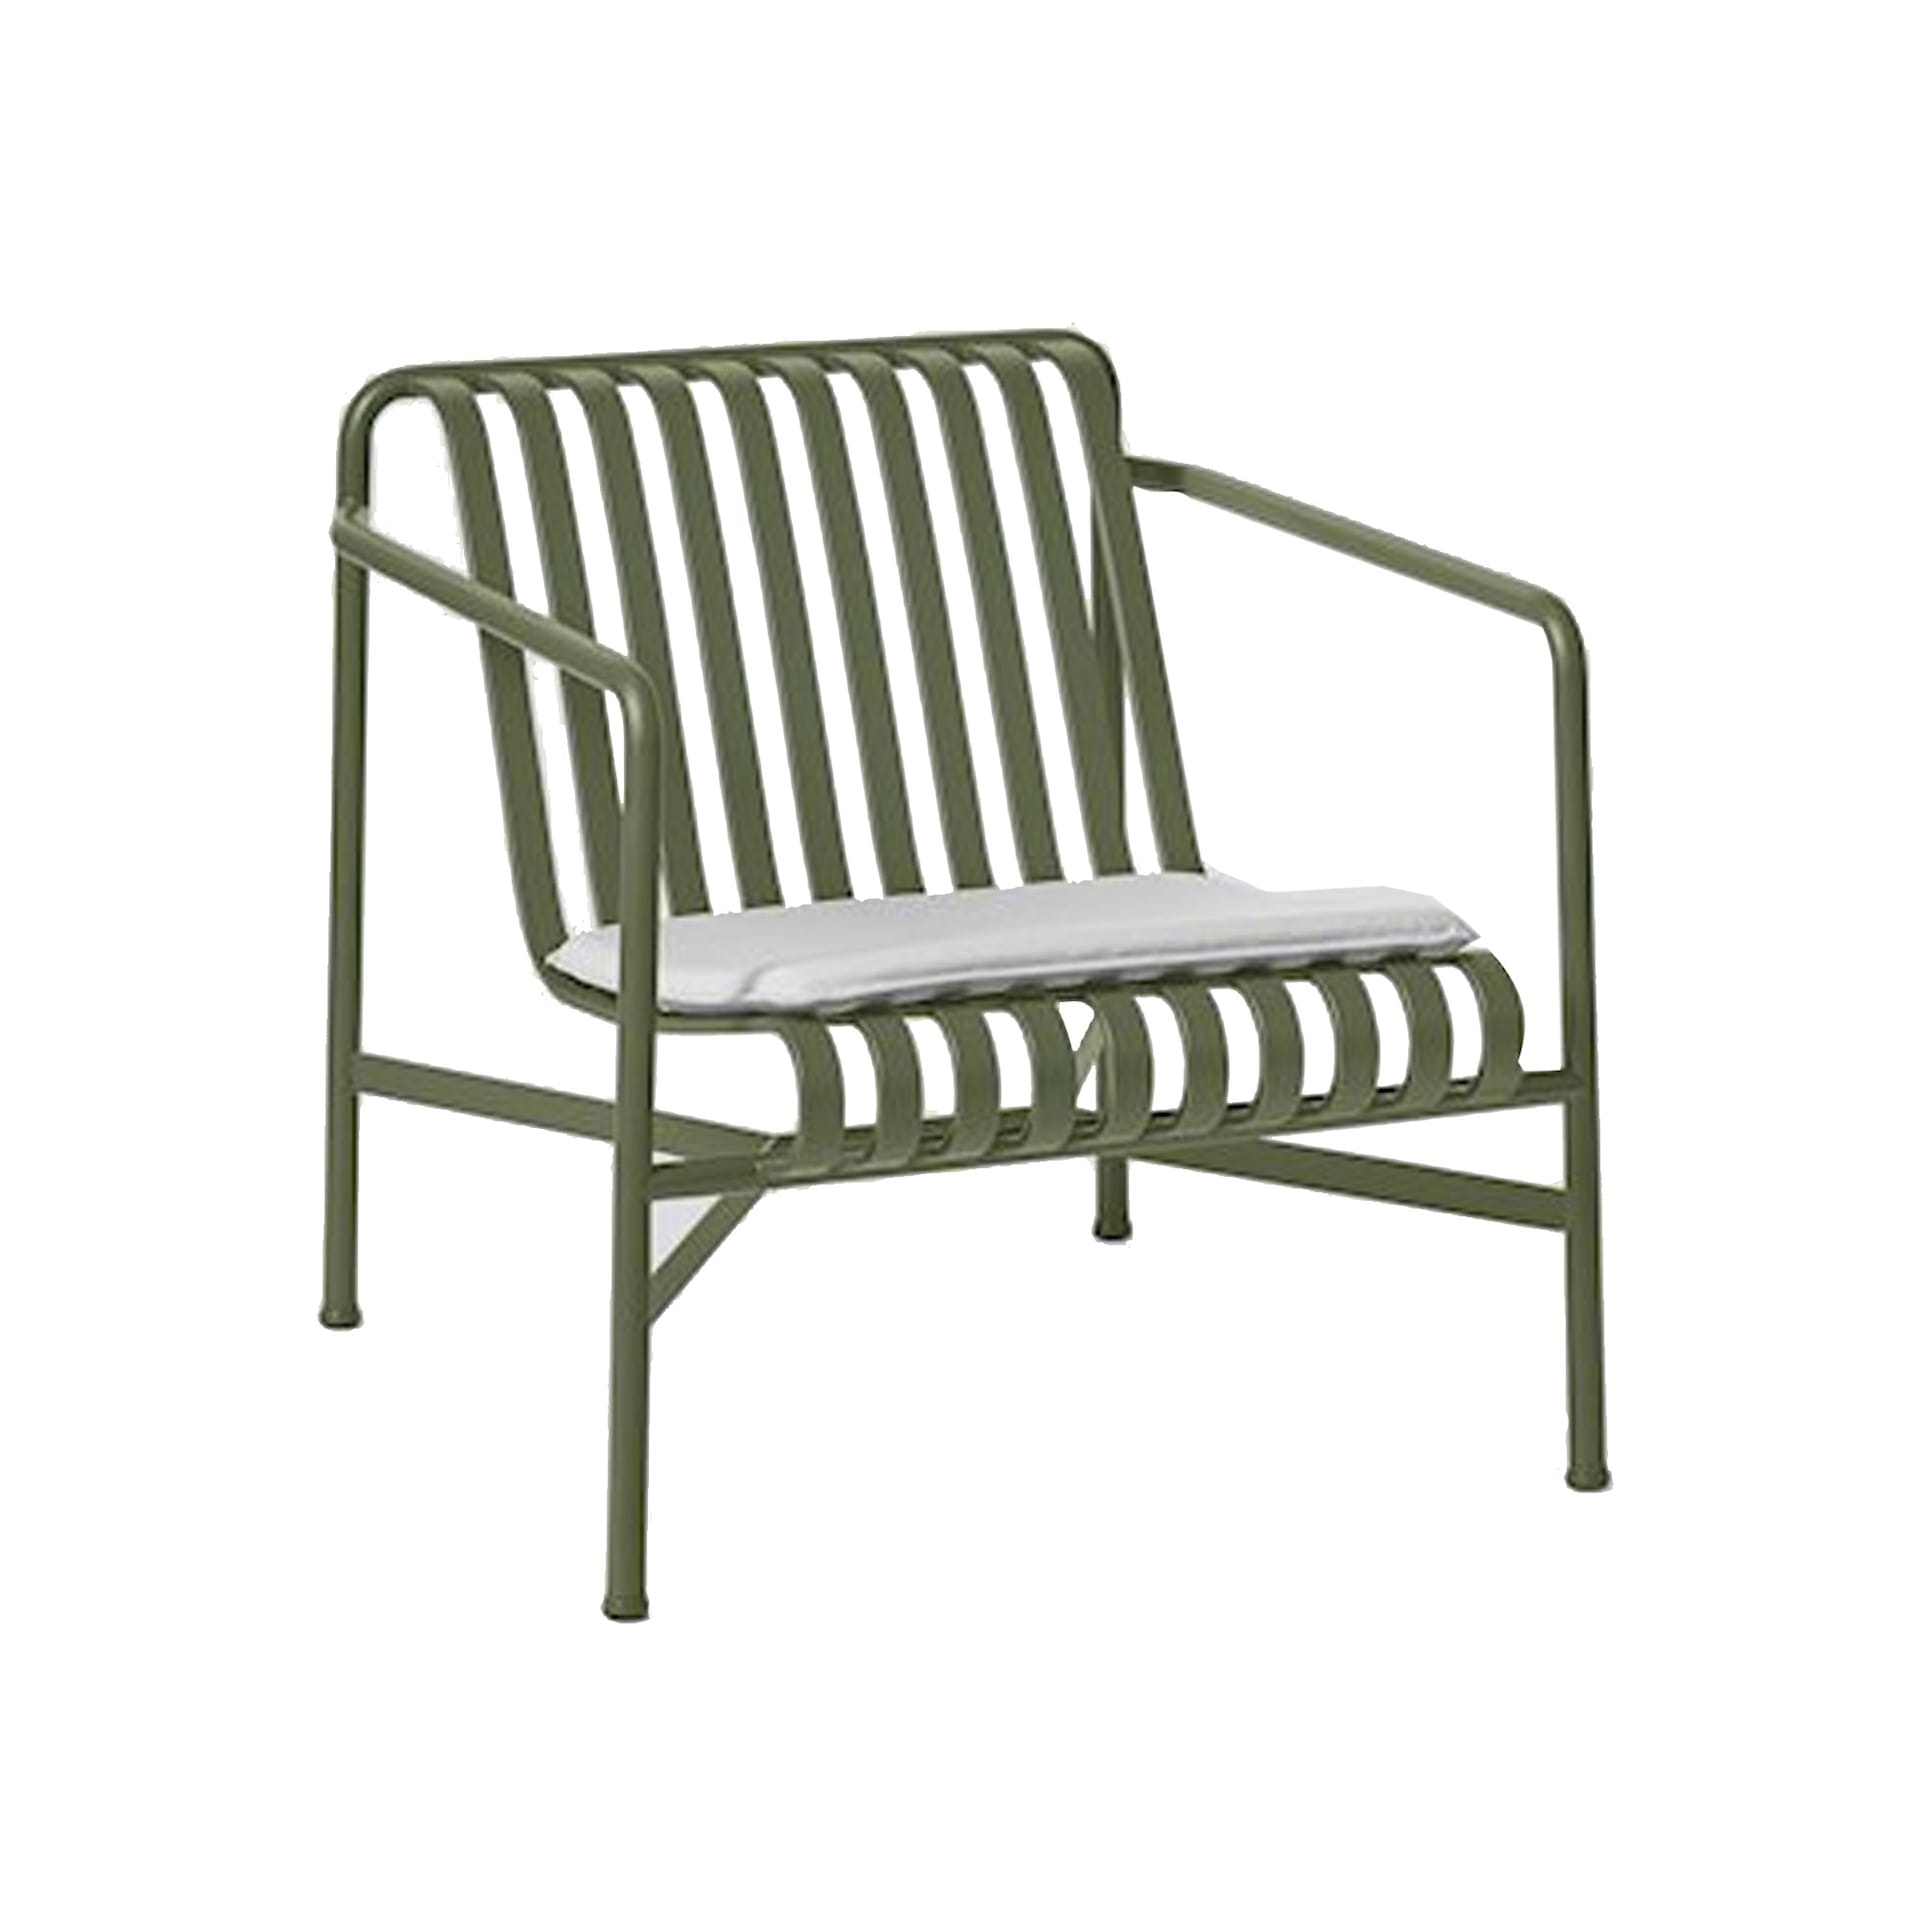 Palissade Seat Cushion - Lounge Chair High  Low - HAY - Ronan & Erwan Bouroullec - NO GA